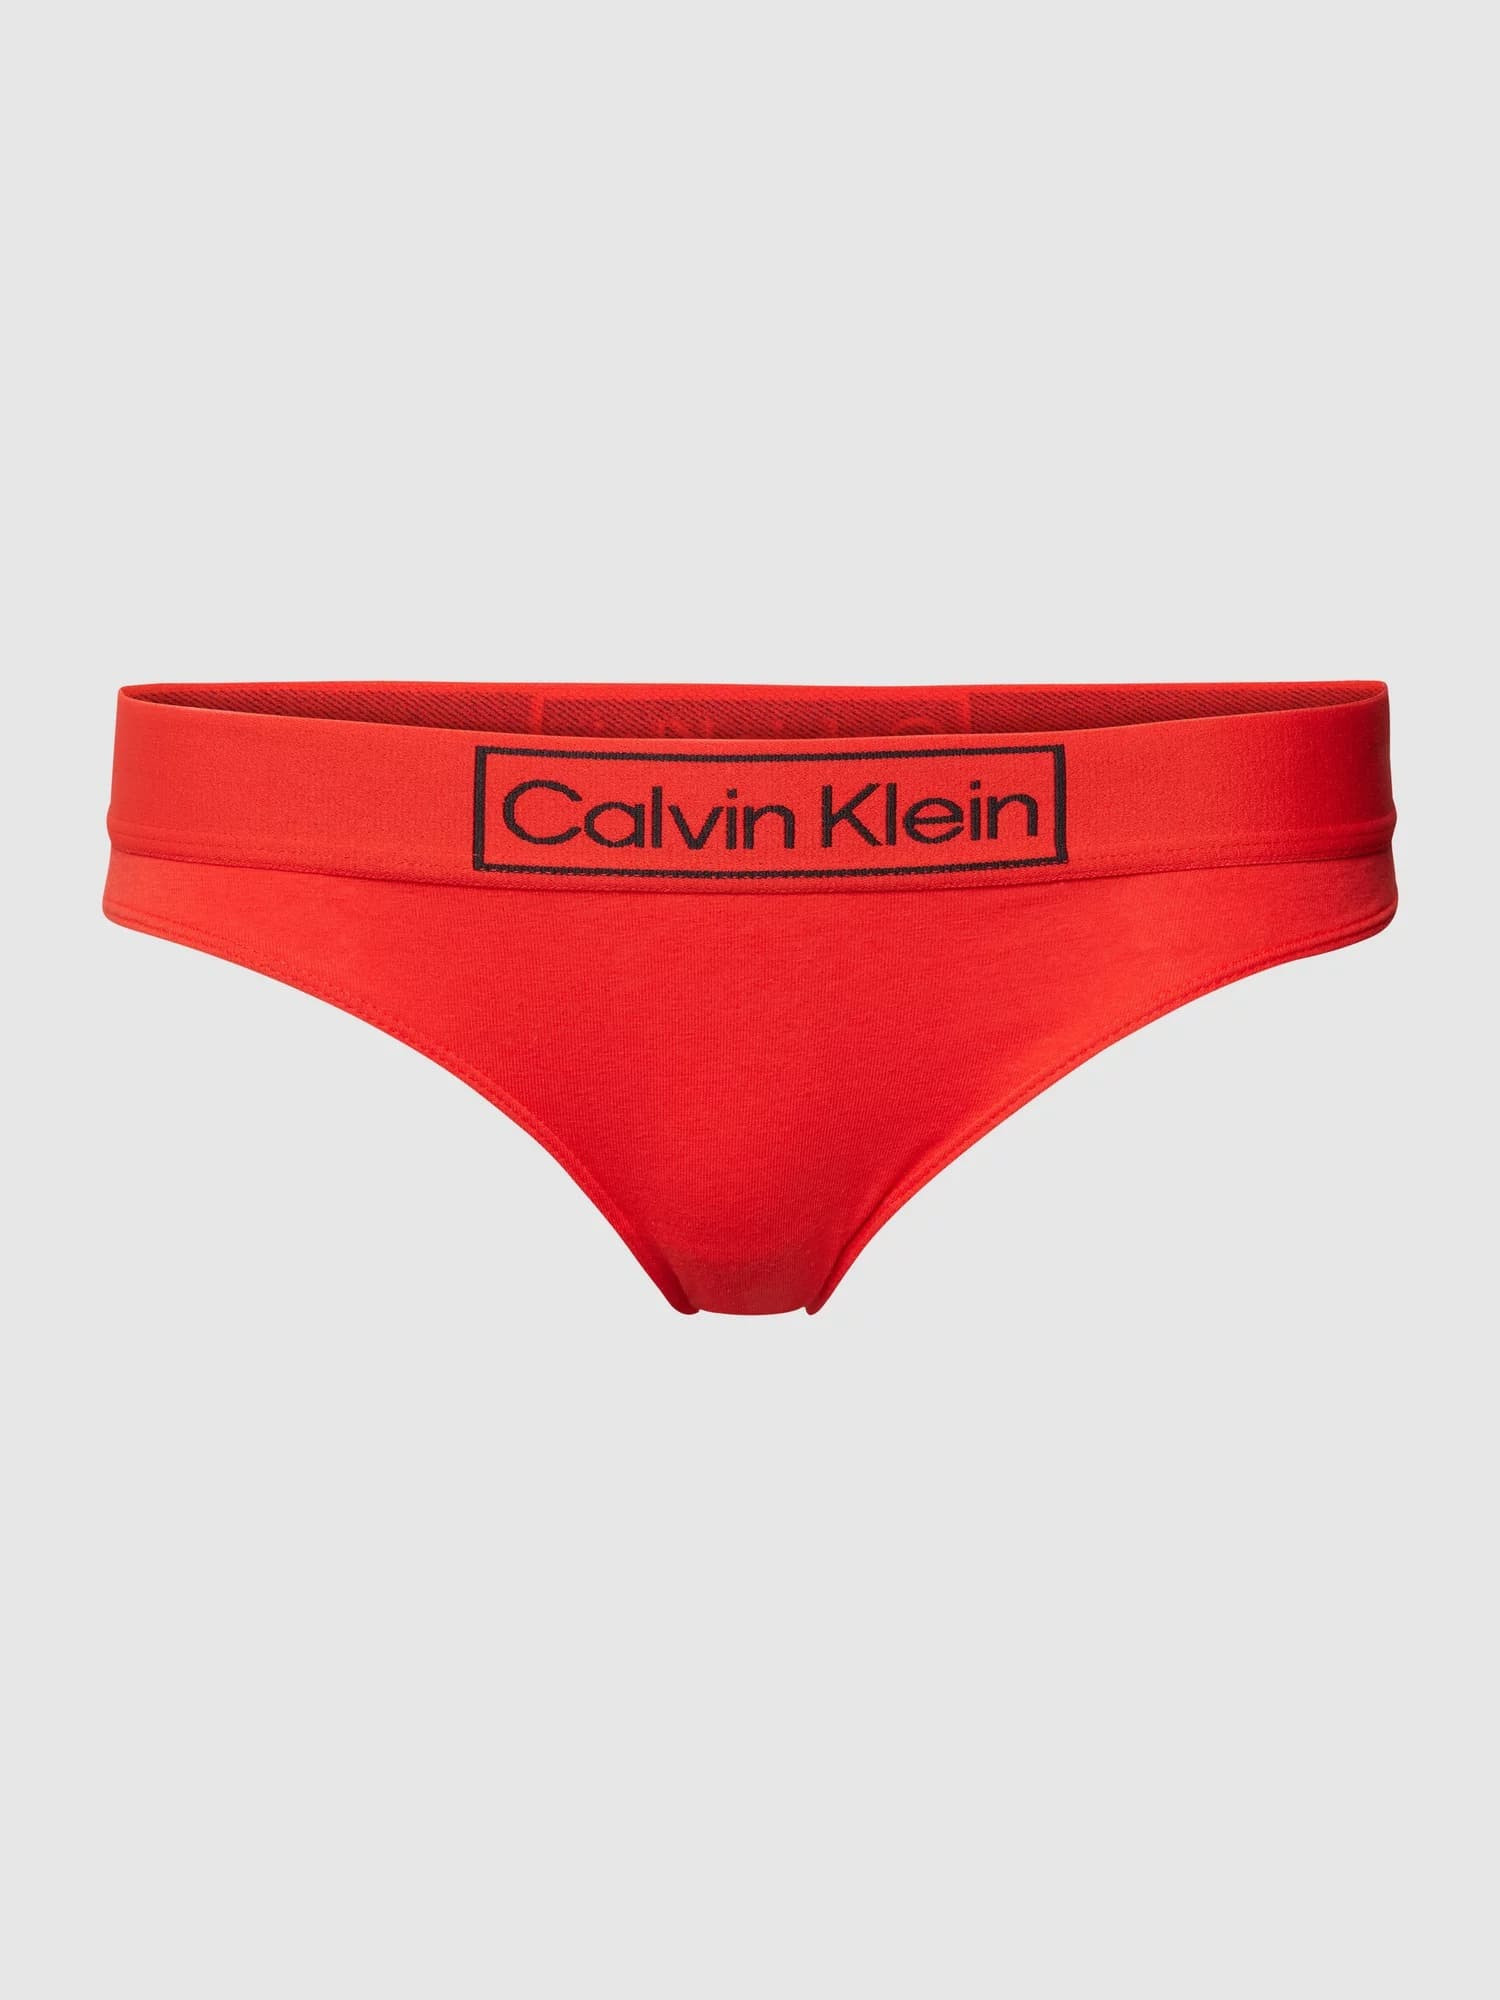 Dámské kalhotky Heritage model 17398738 - Calvin Klein Velikost: L, Barvy: červeno-oranžová